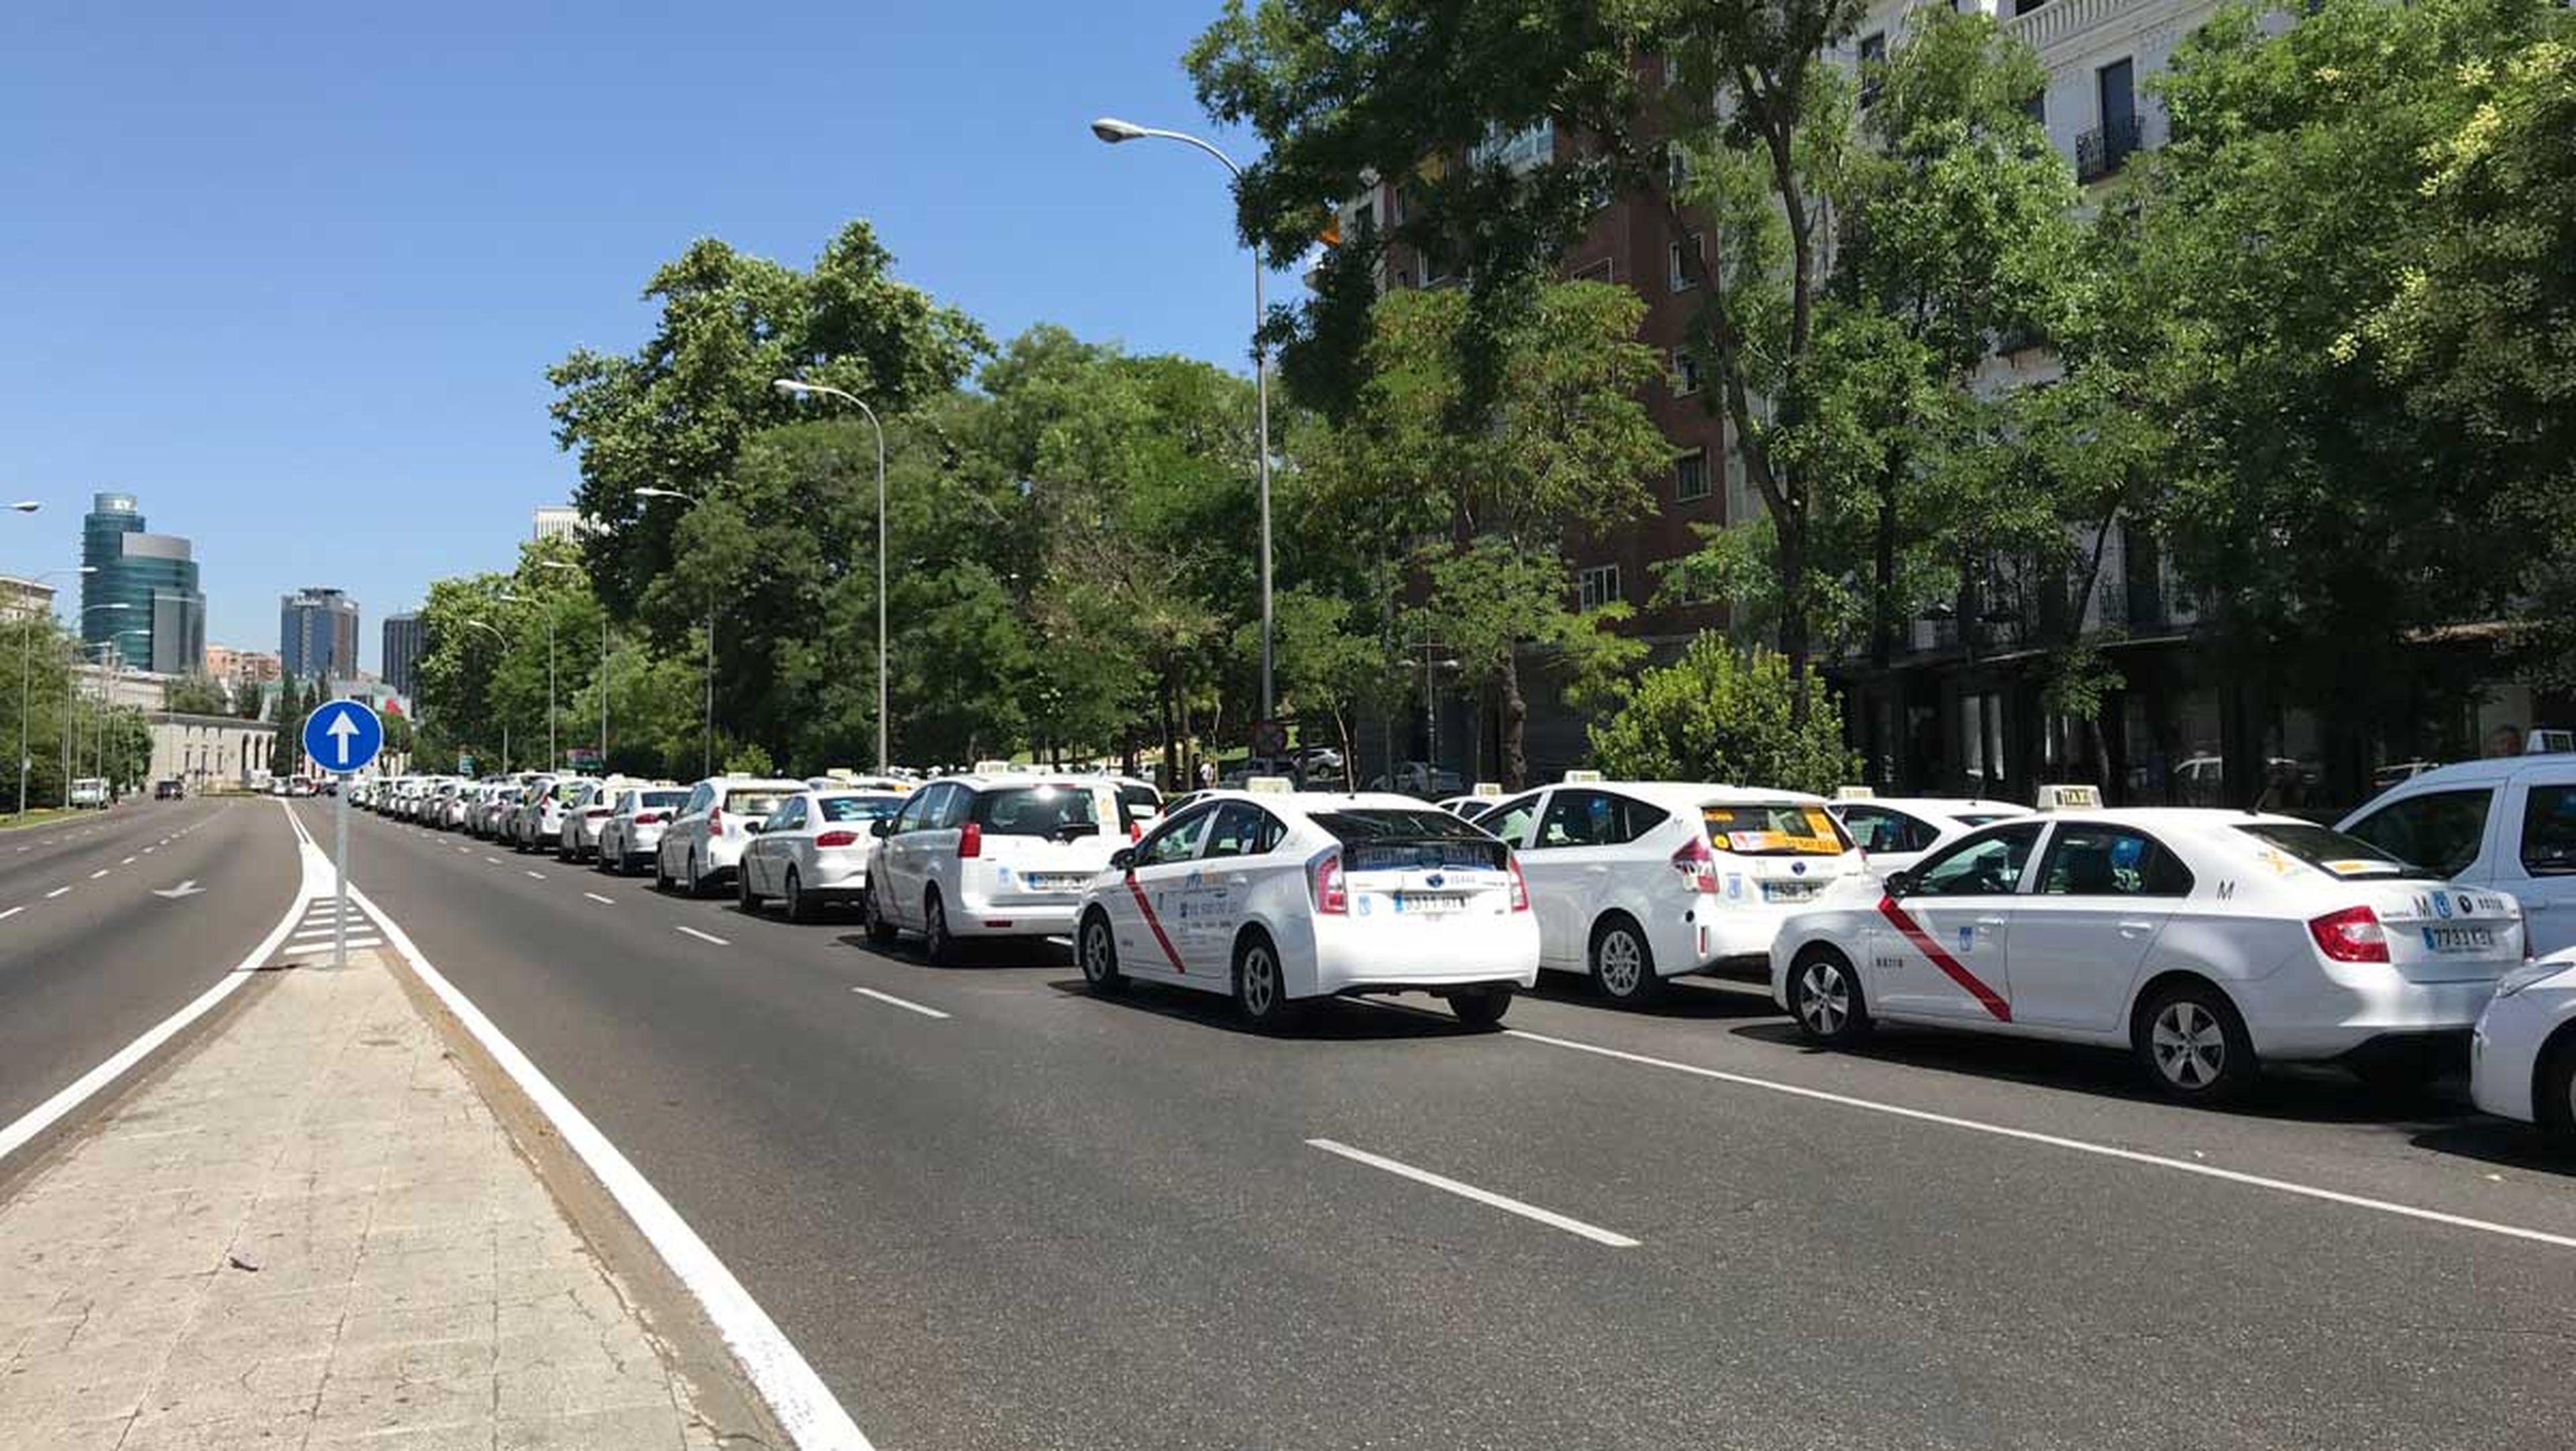 Huelga de taxi en Madrid